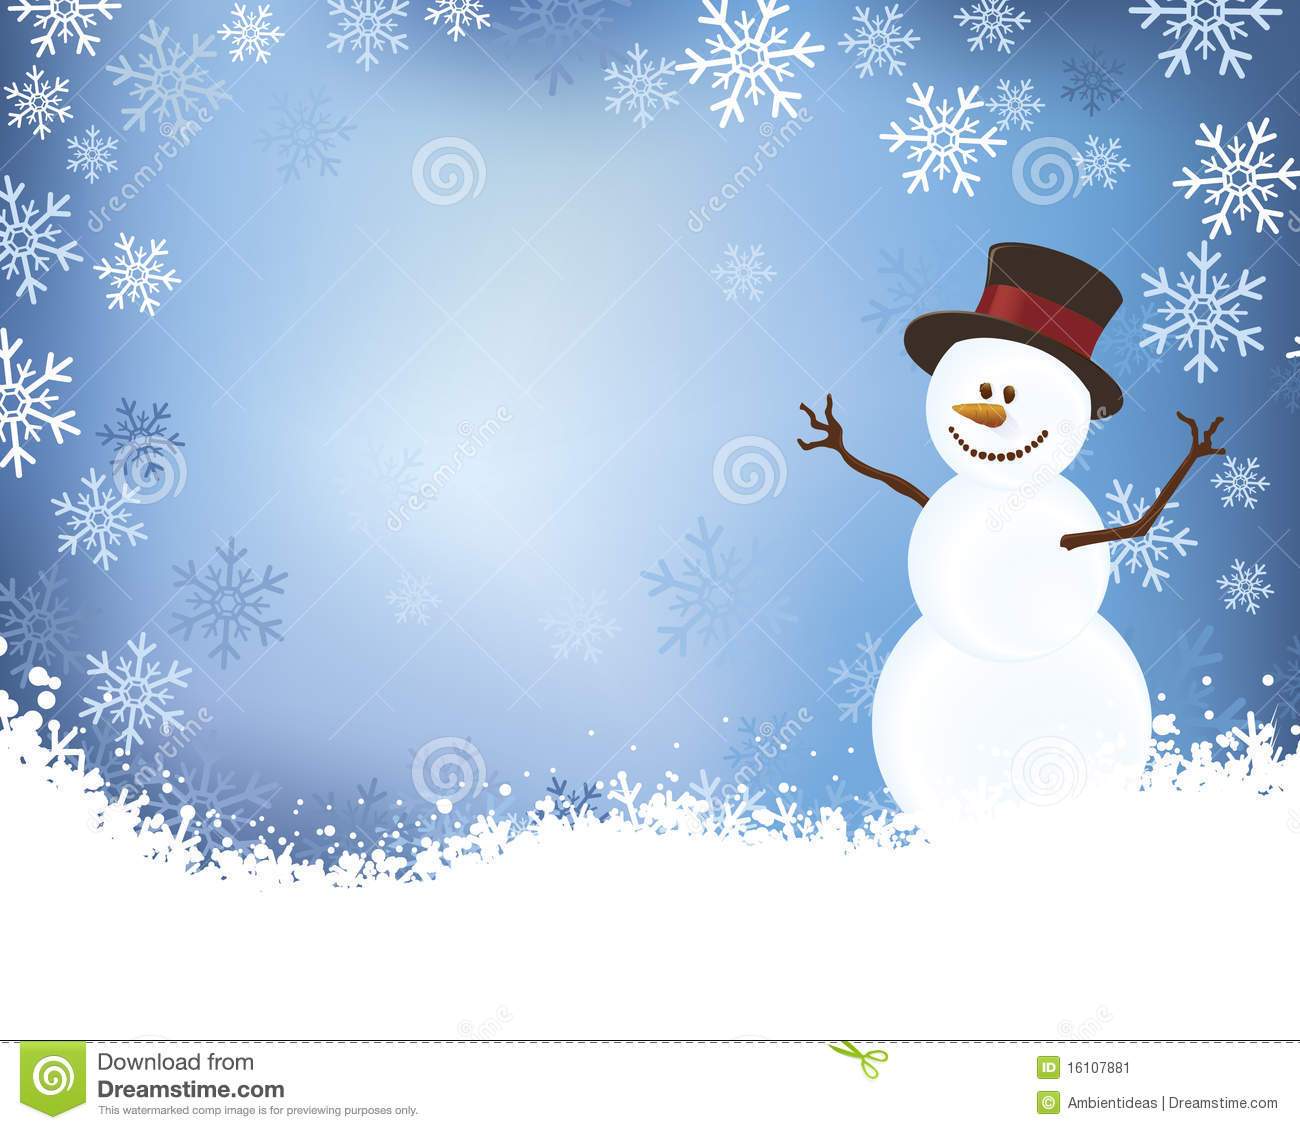 Snow scene clipart free 2 » Clipart Portal.